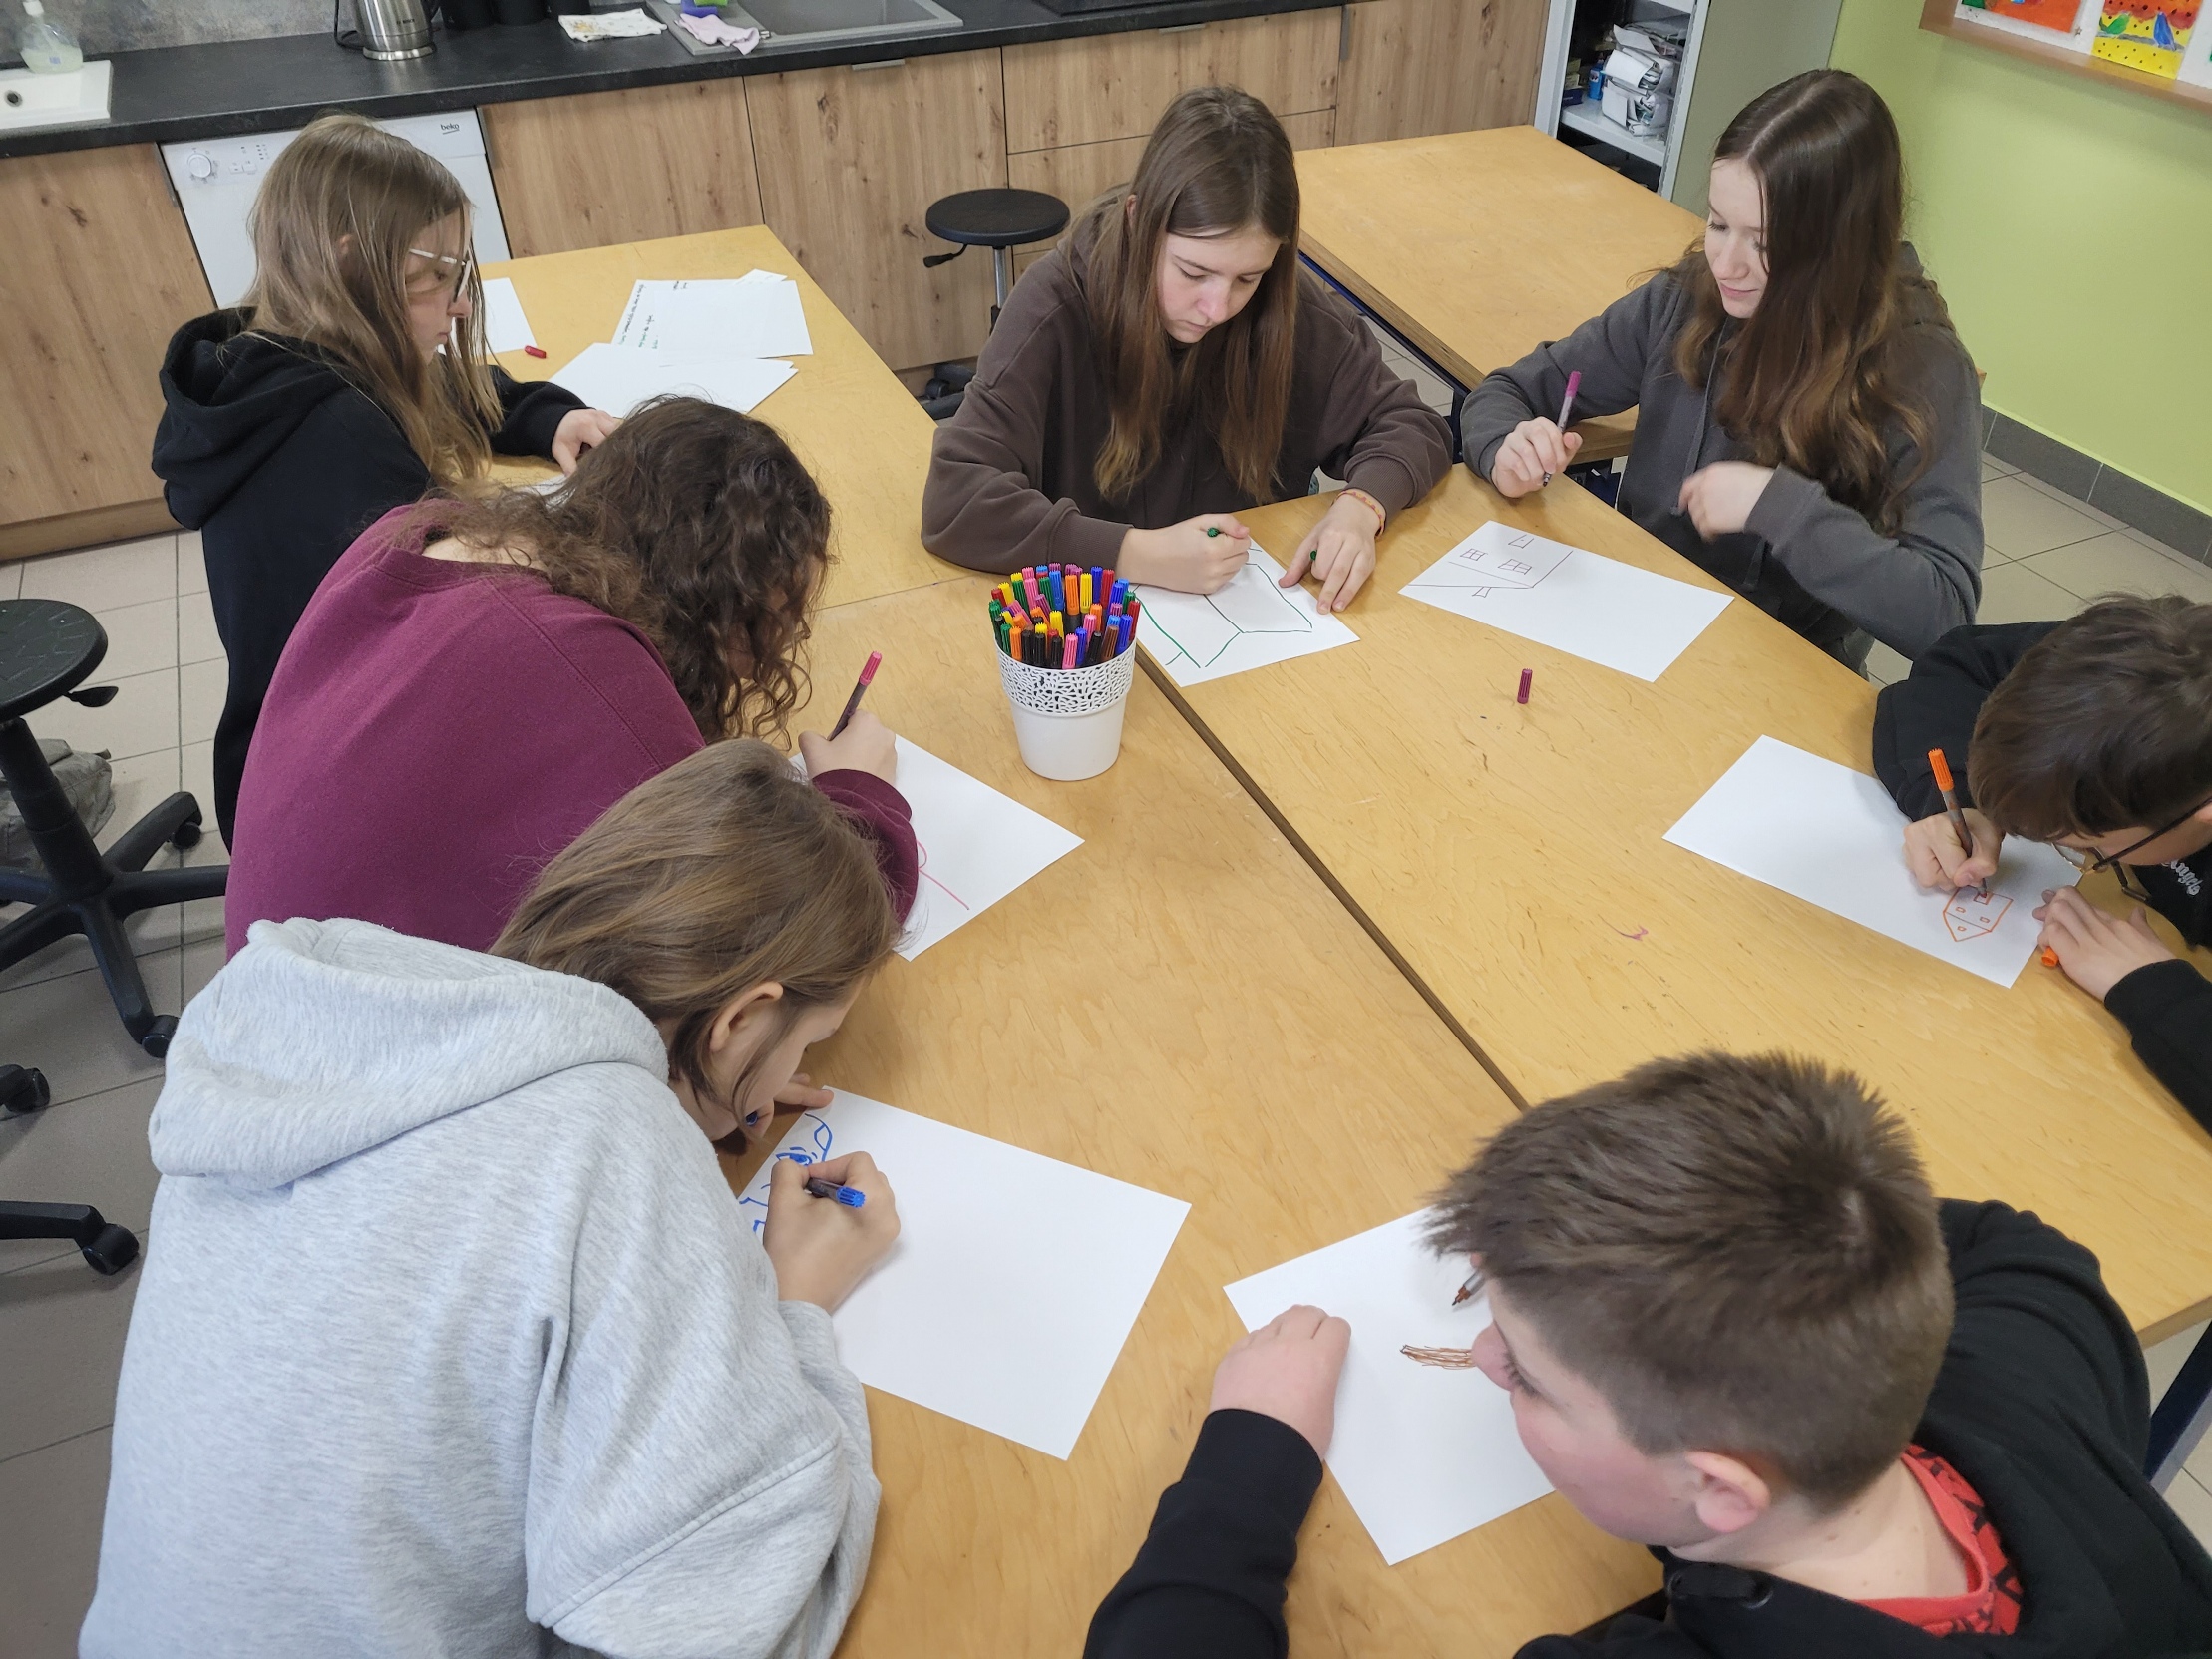 W sali lekcyjnej, grupa młodzieży siedzi w ławkach w dwóch rzędach, pochylona nad rozłożonymi na stole kartkami papieru.